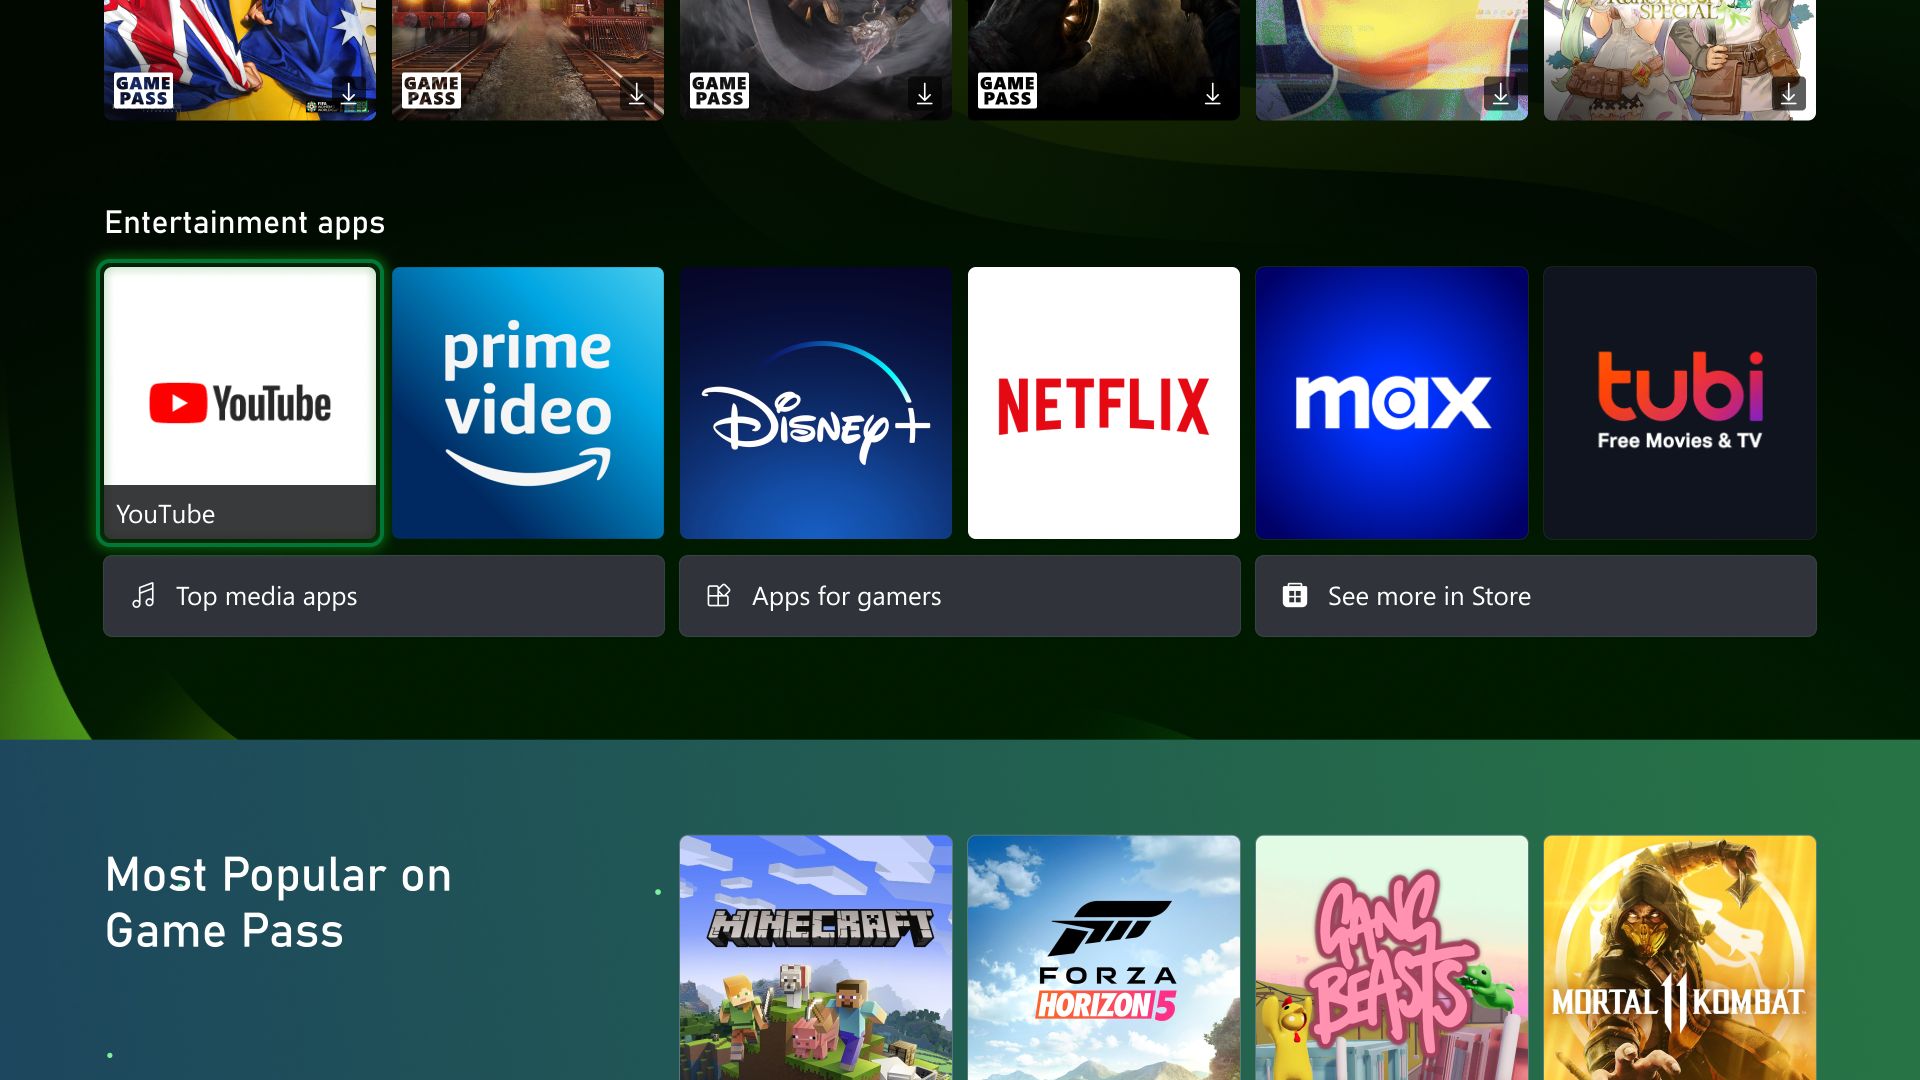 Xbox Series X : l'écran d'accueil s'offre la 4K